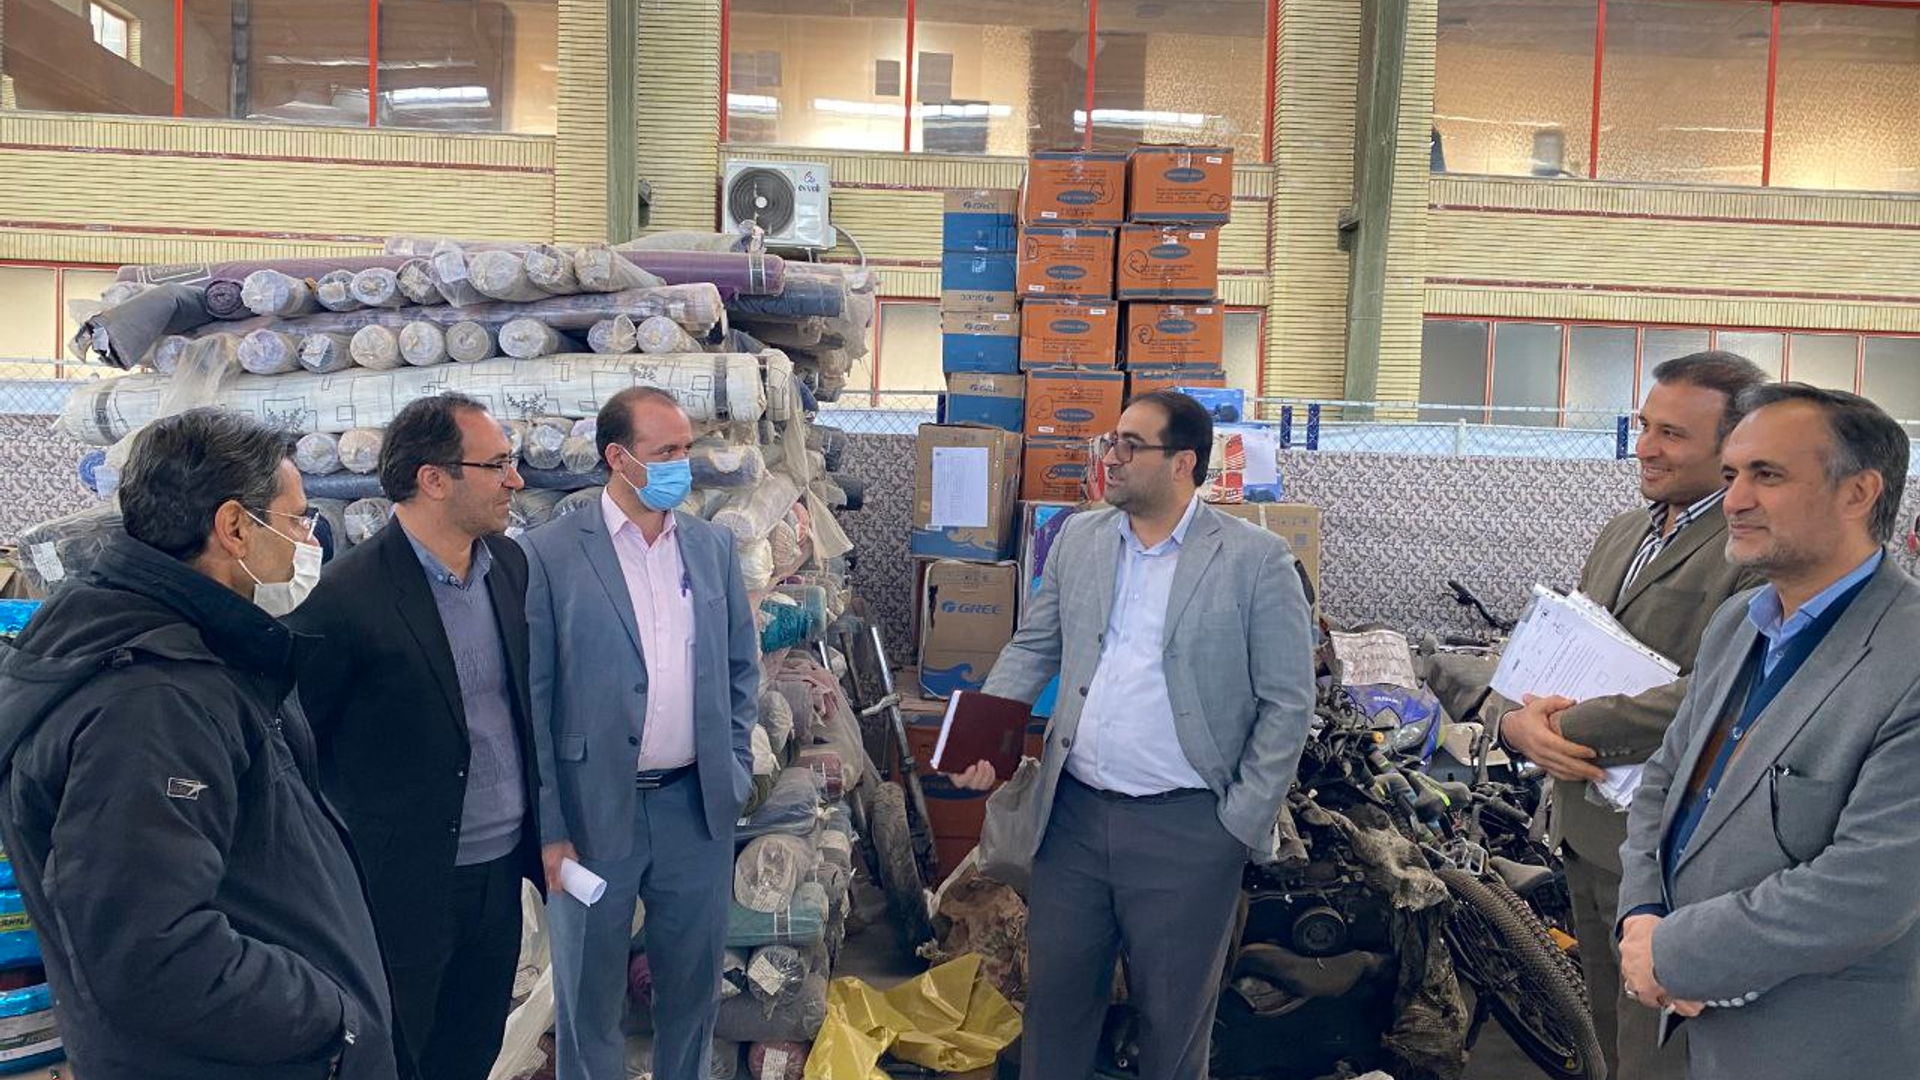 بازدید دکتر اتابکی، دبیر کمیسیون مبارزه با قاچاق کالا و ارز استان از انبار اموال تملیکی